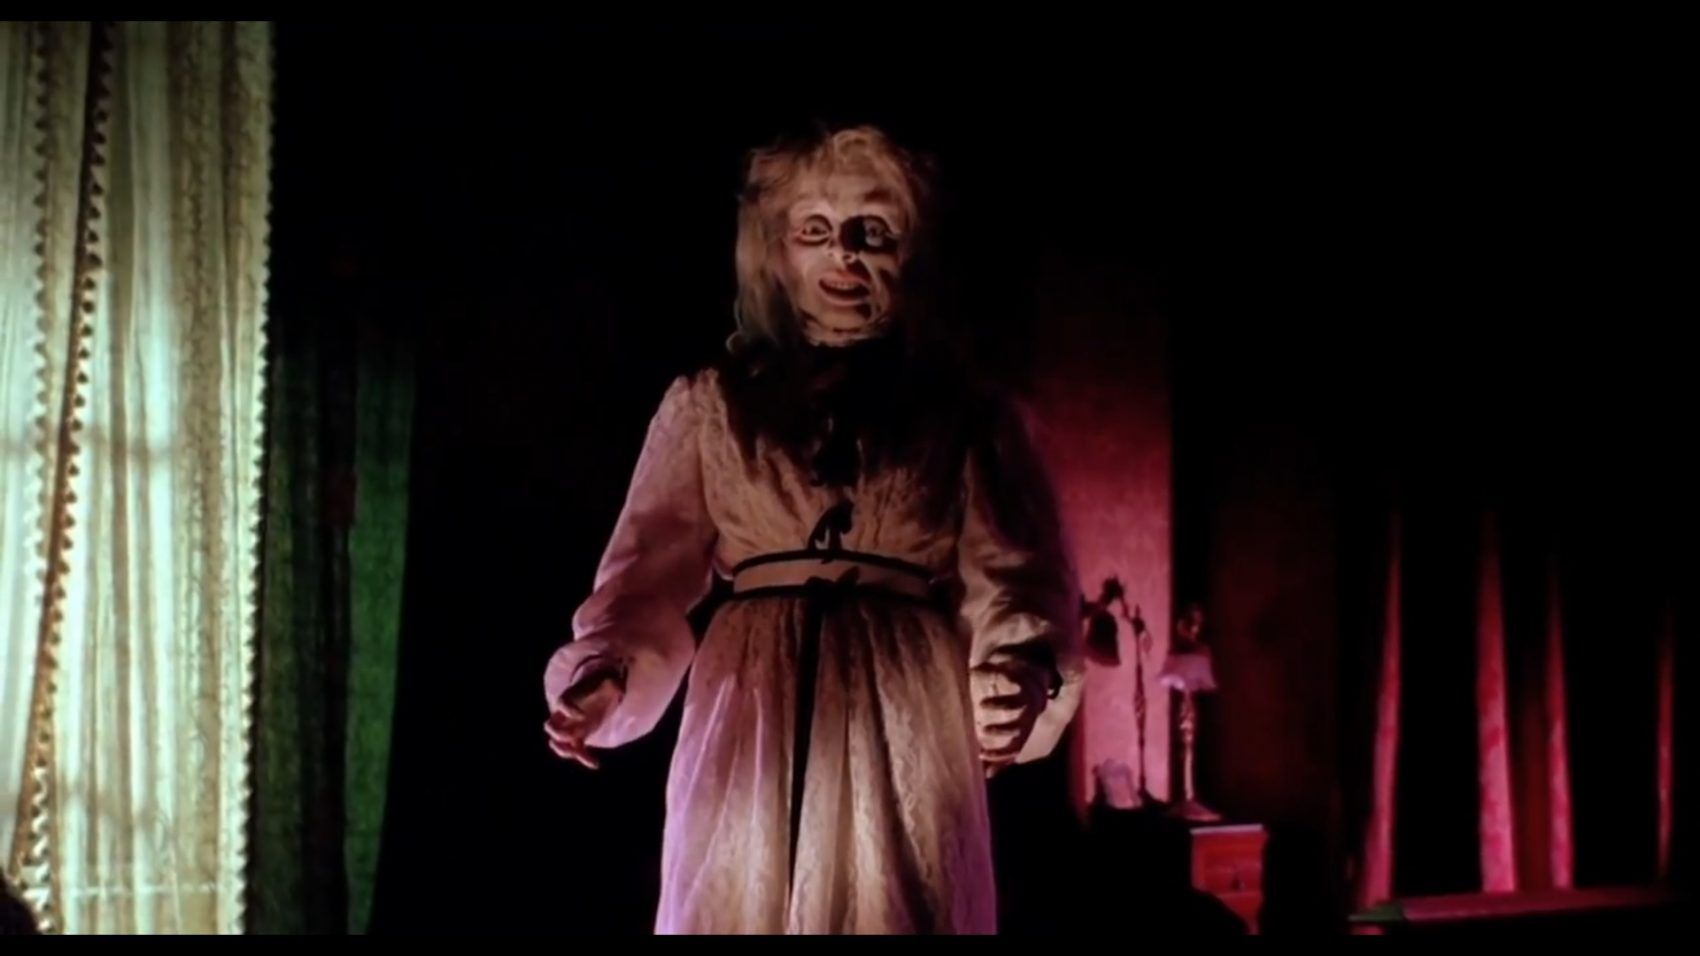 Il fantasma nell’episodio finale di “I tre volti della paura” (1963)